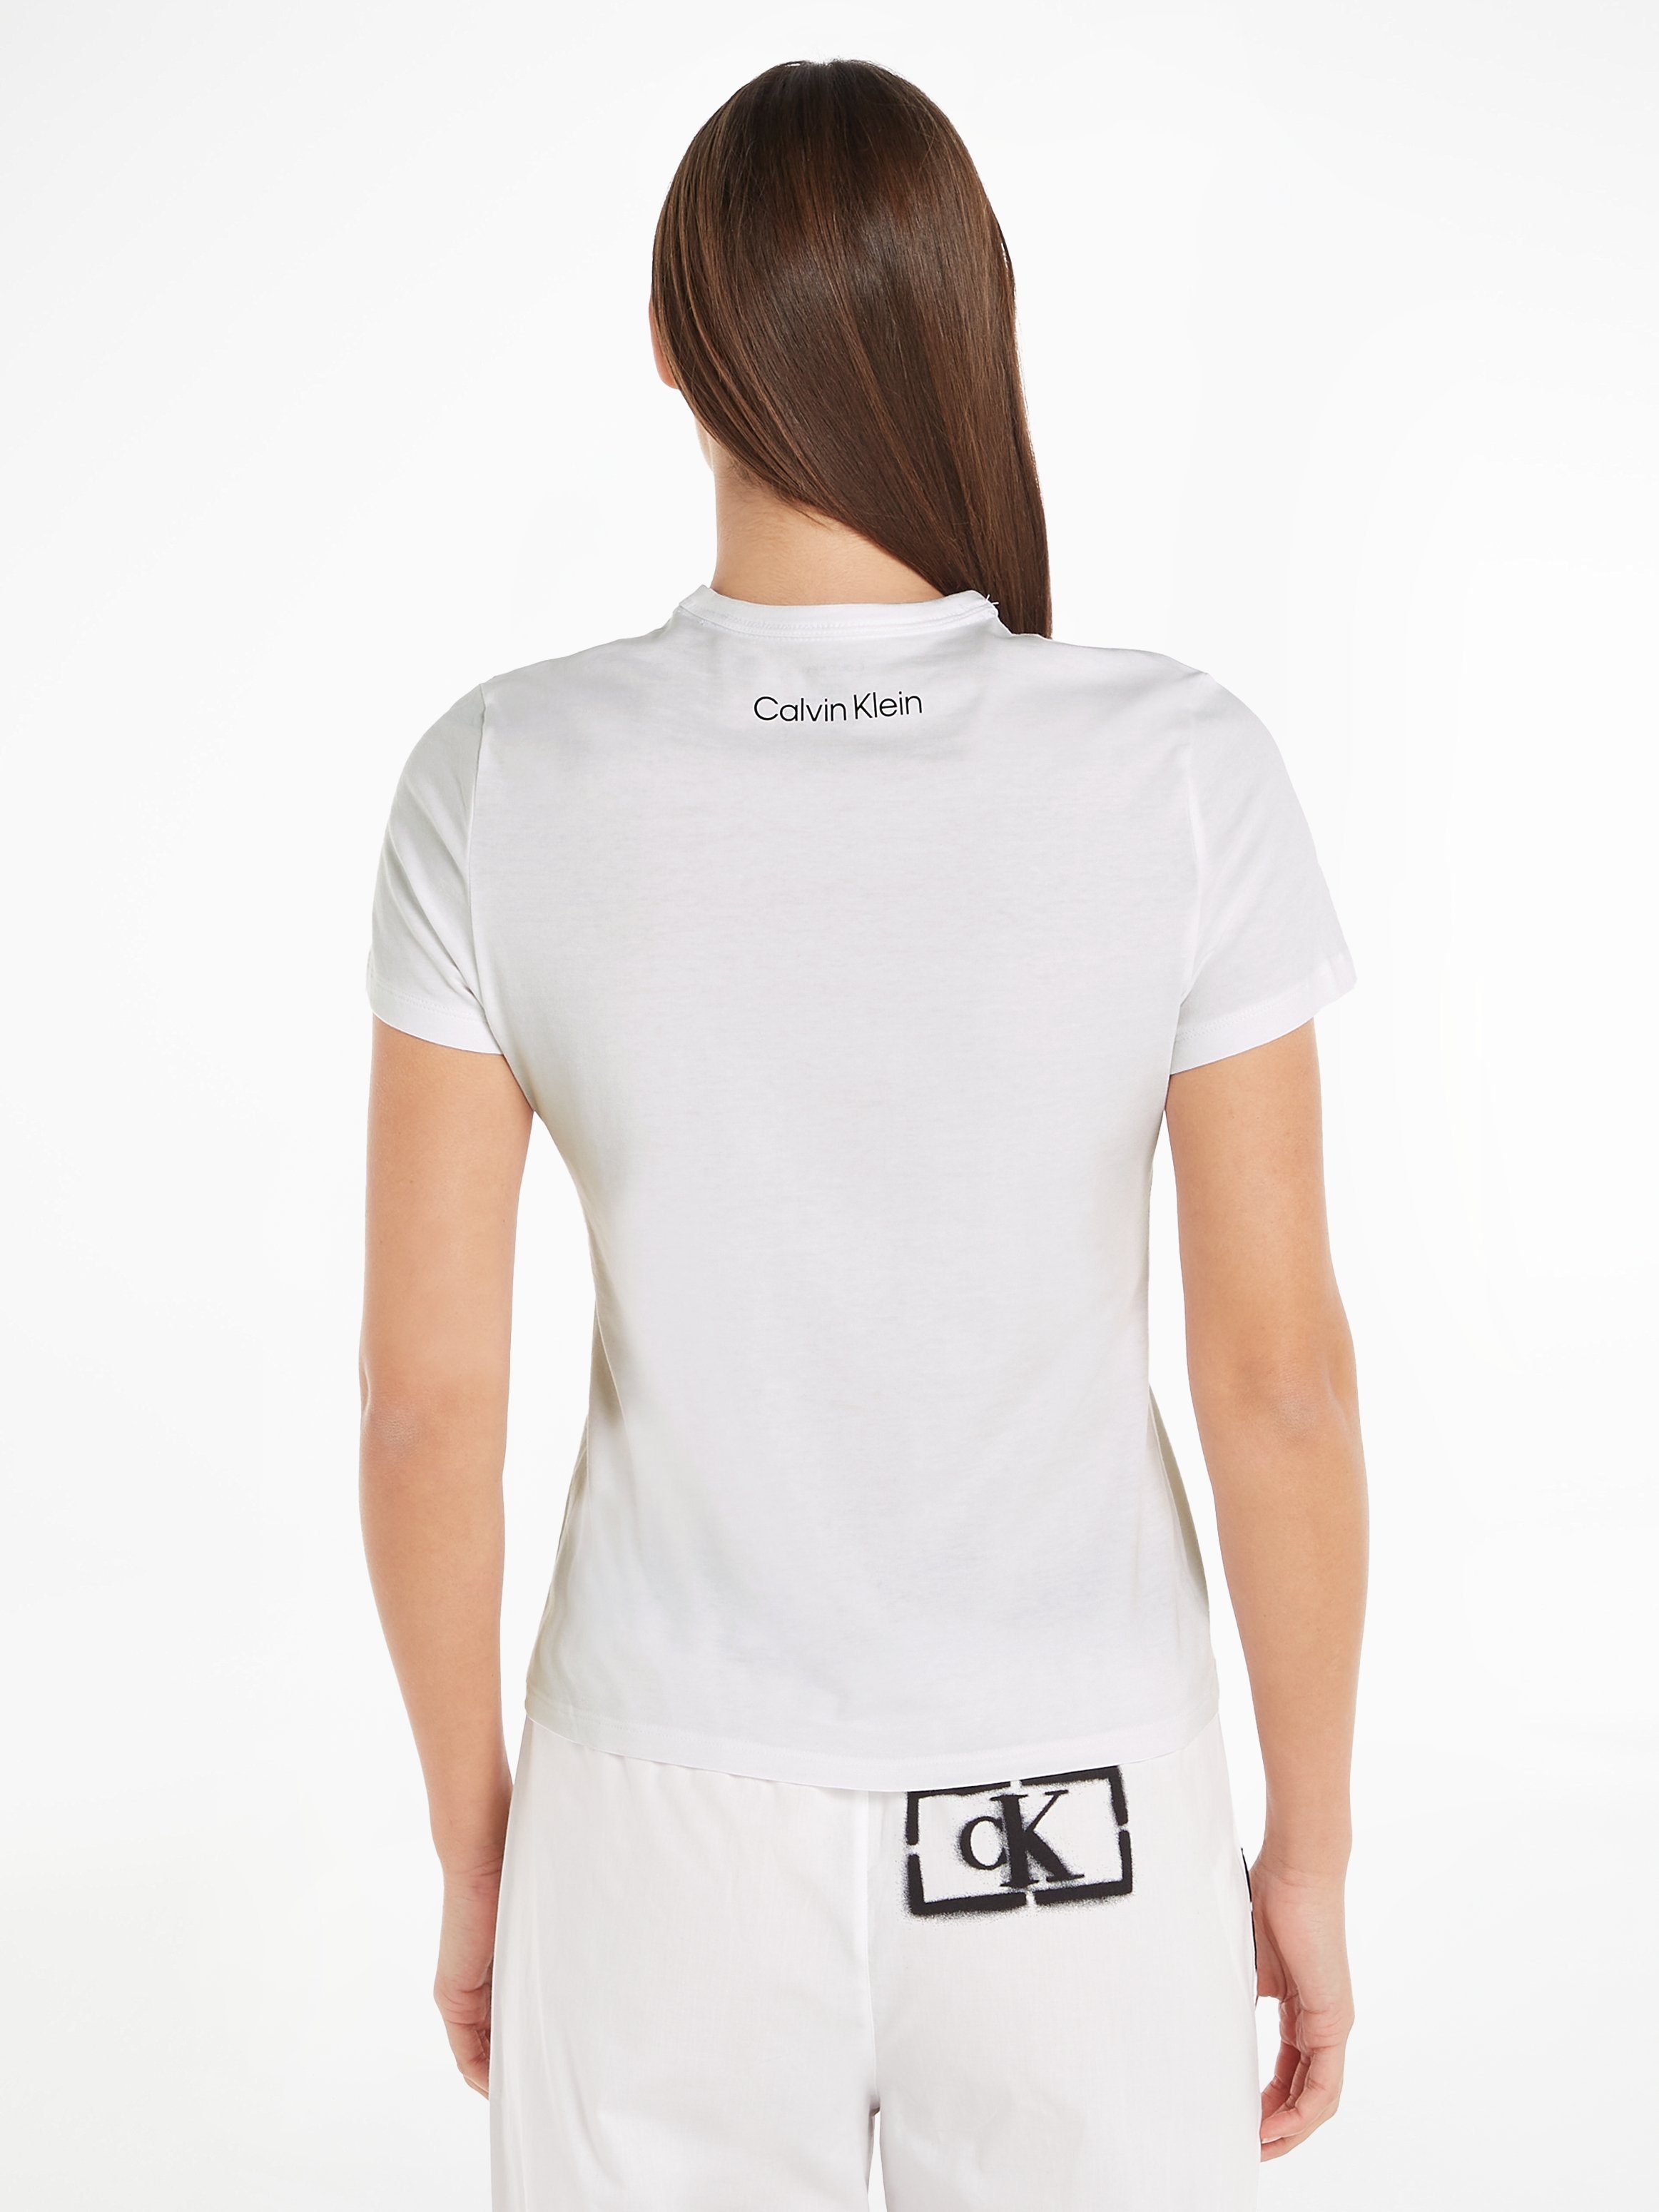 CREW WHITE Kurzarmshirt Klein Underwear Calvin S/S NECK